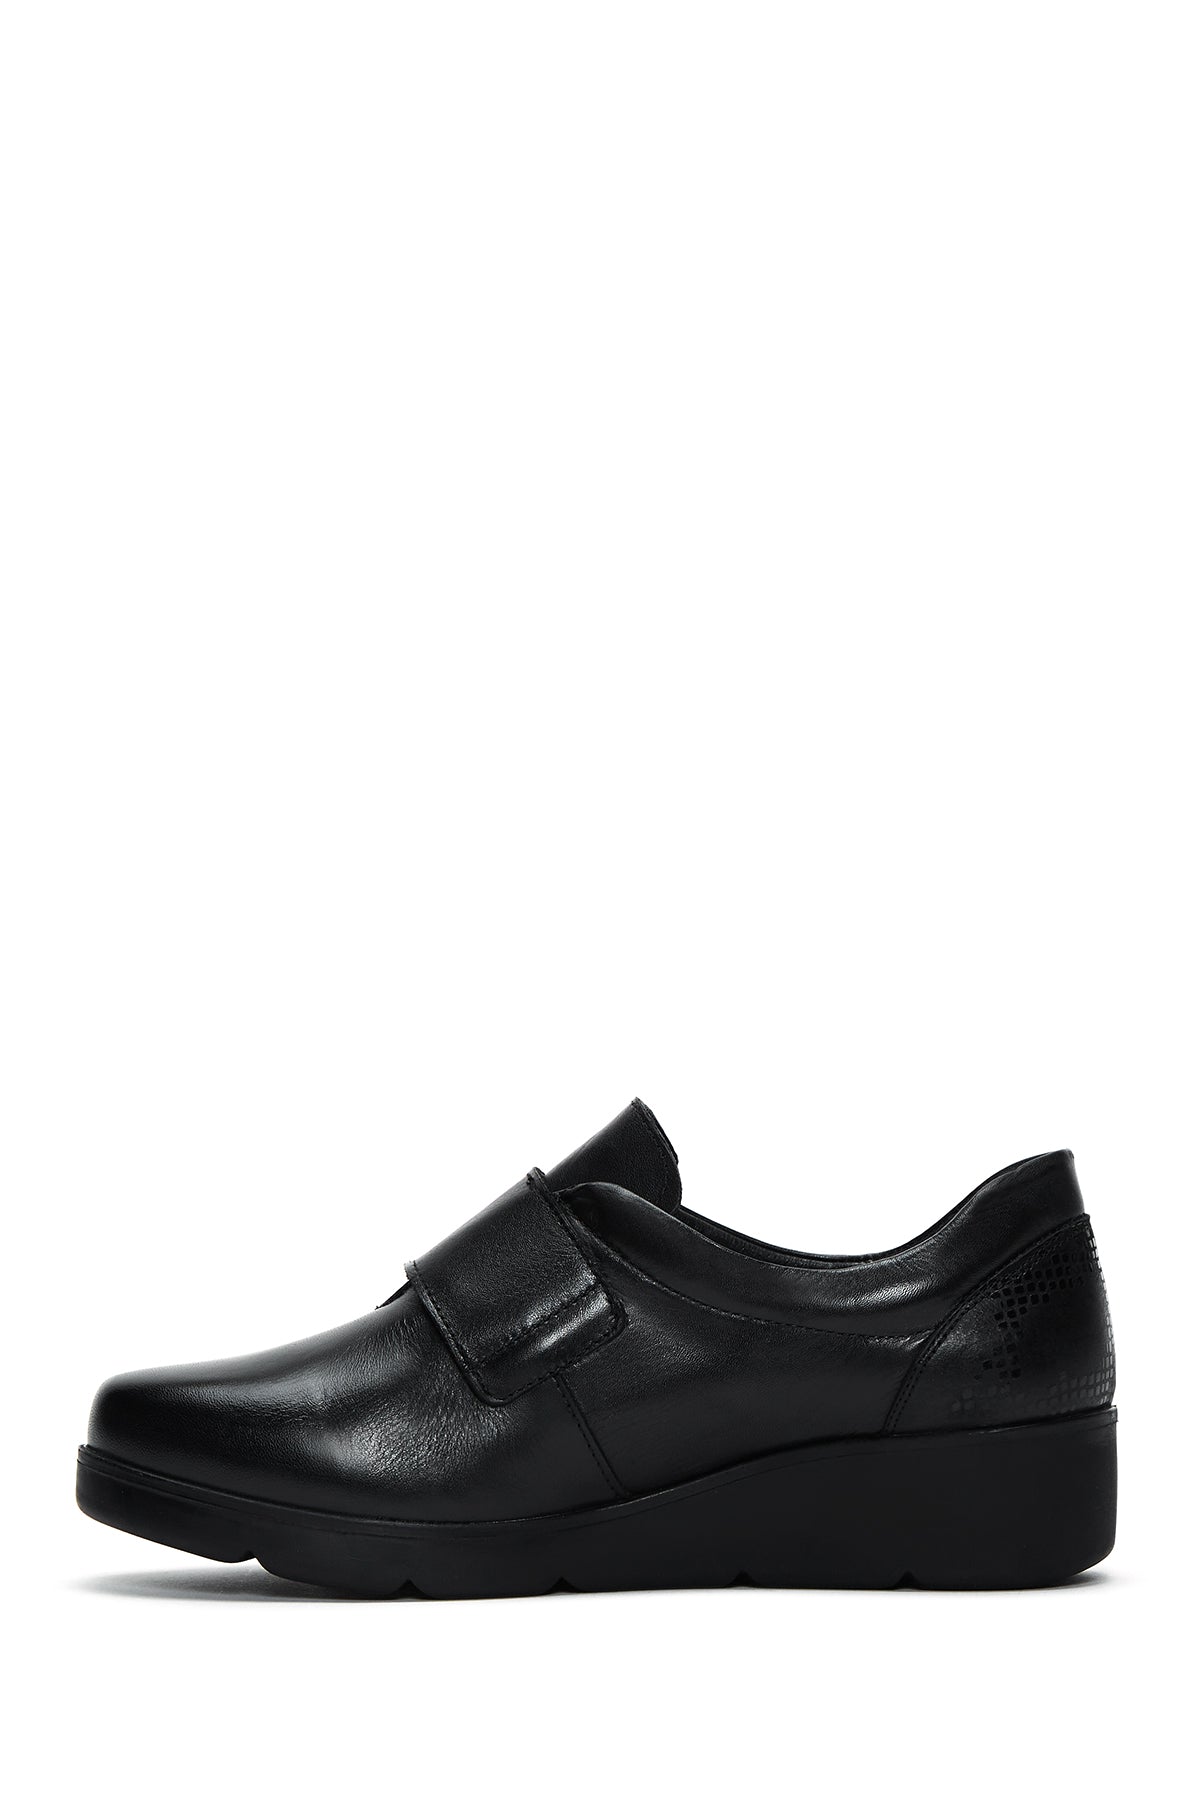 Kadın Siyah Deri Comfort Dolgu Topuklu Ayakkabı